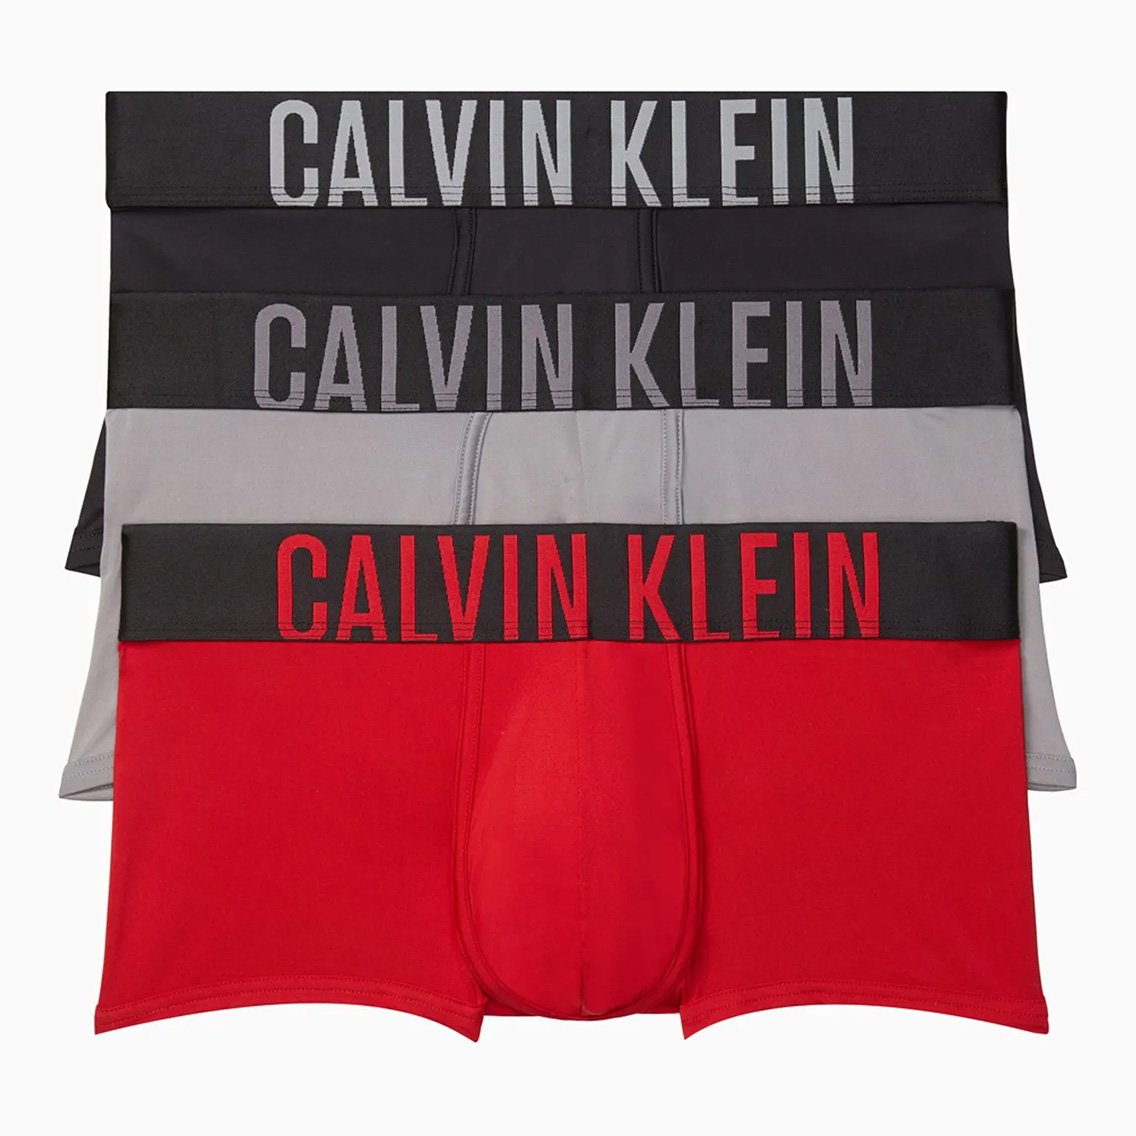 Calvin Klein(カルバンクライン)[NB2593-905]:ボクサーパンツ,男性下着 